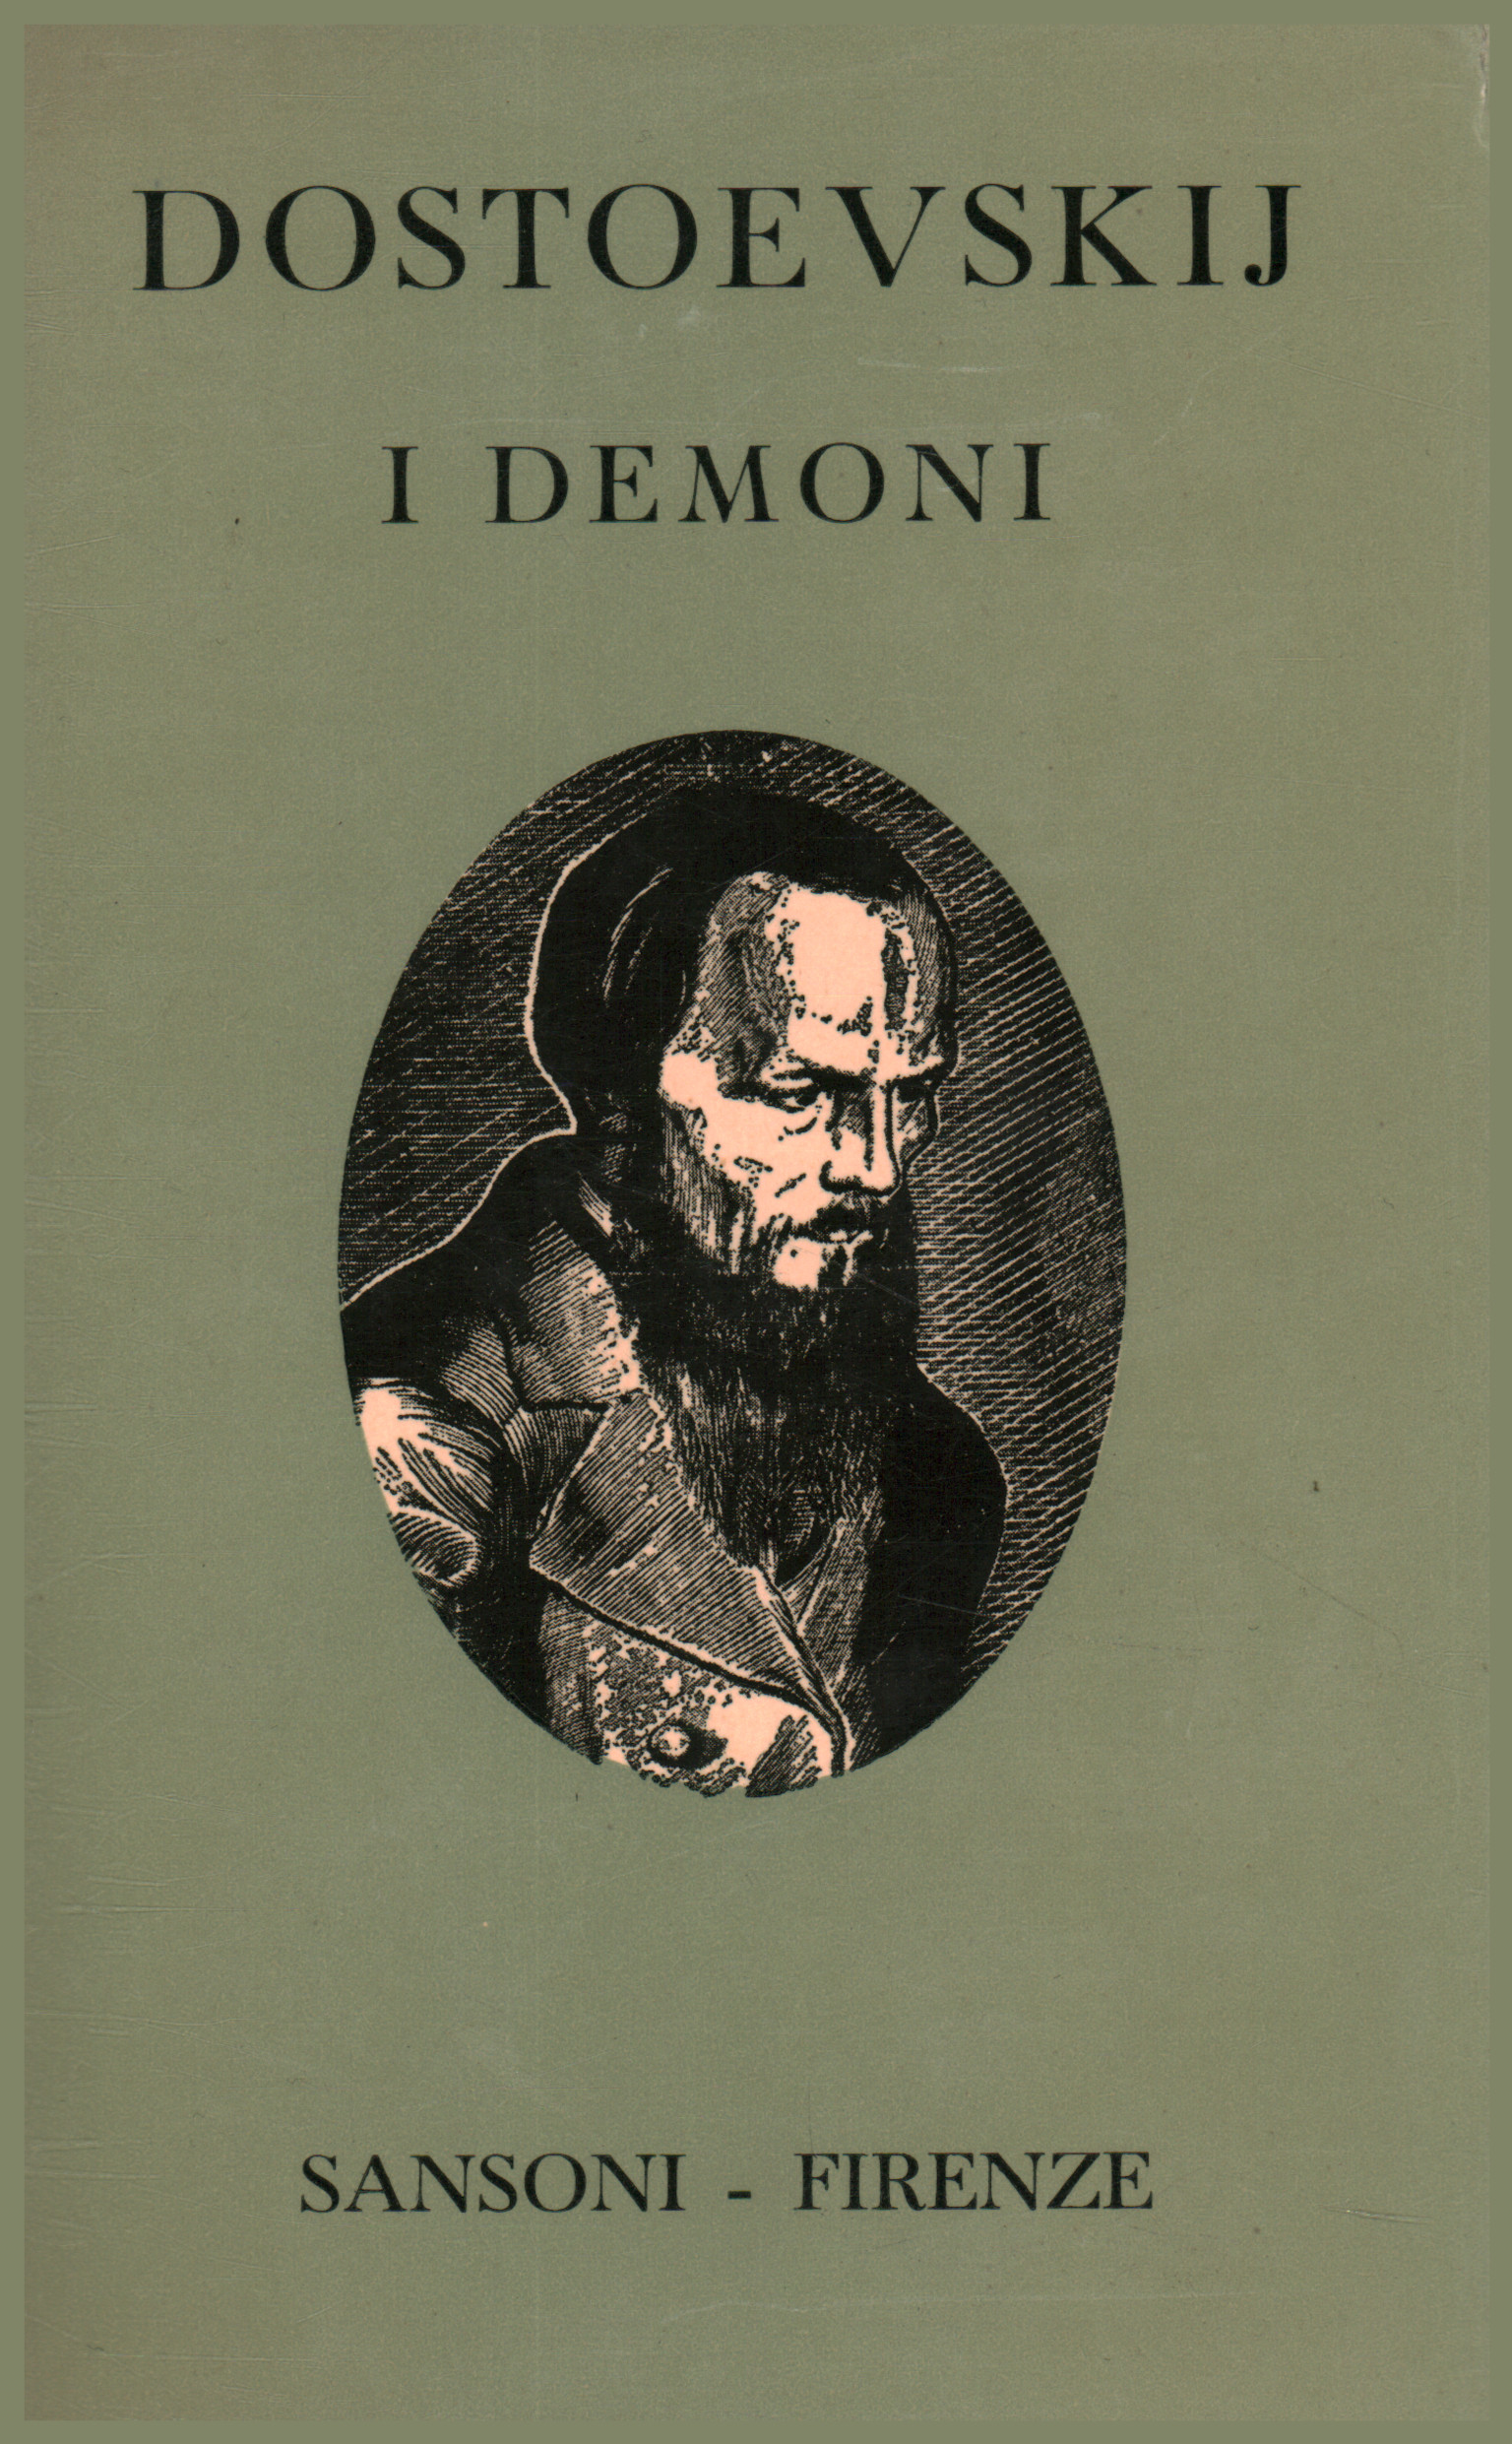 Dostoievski: novelas y cuadernos. Identificación